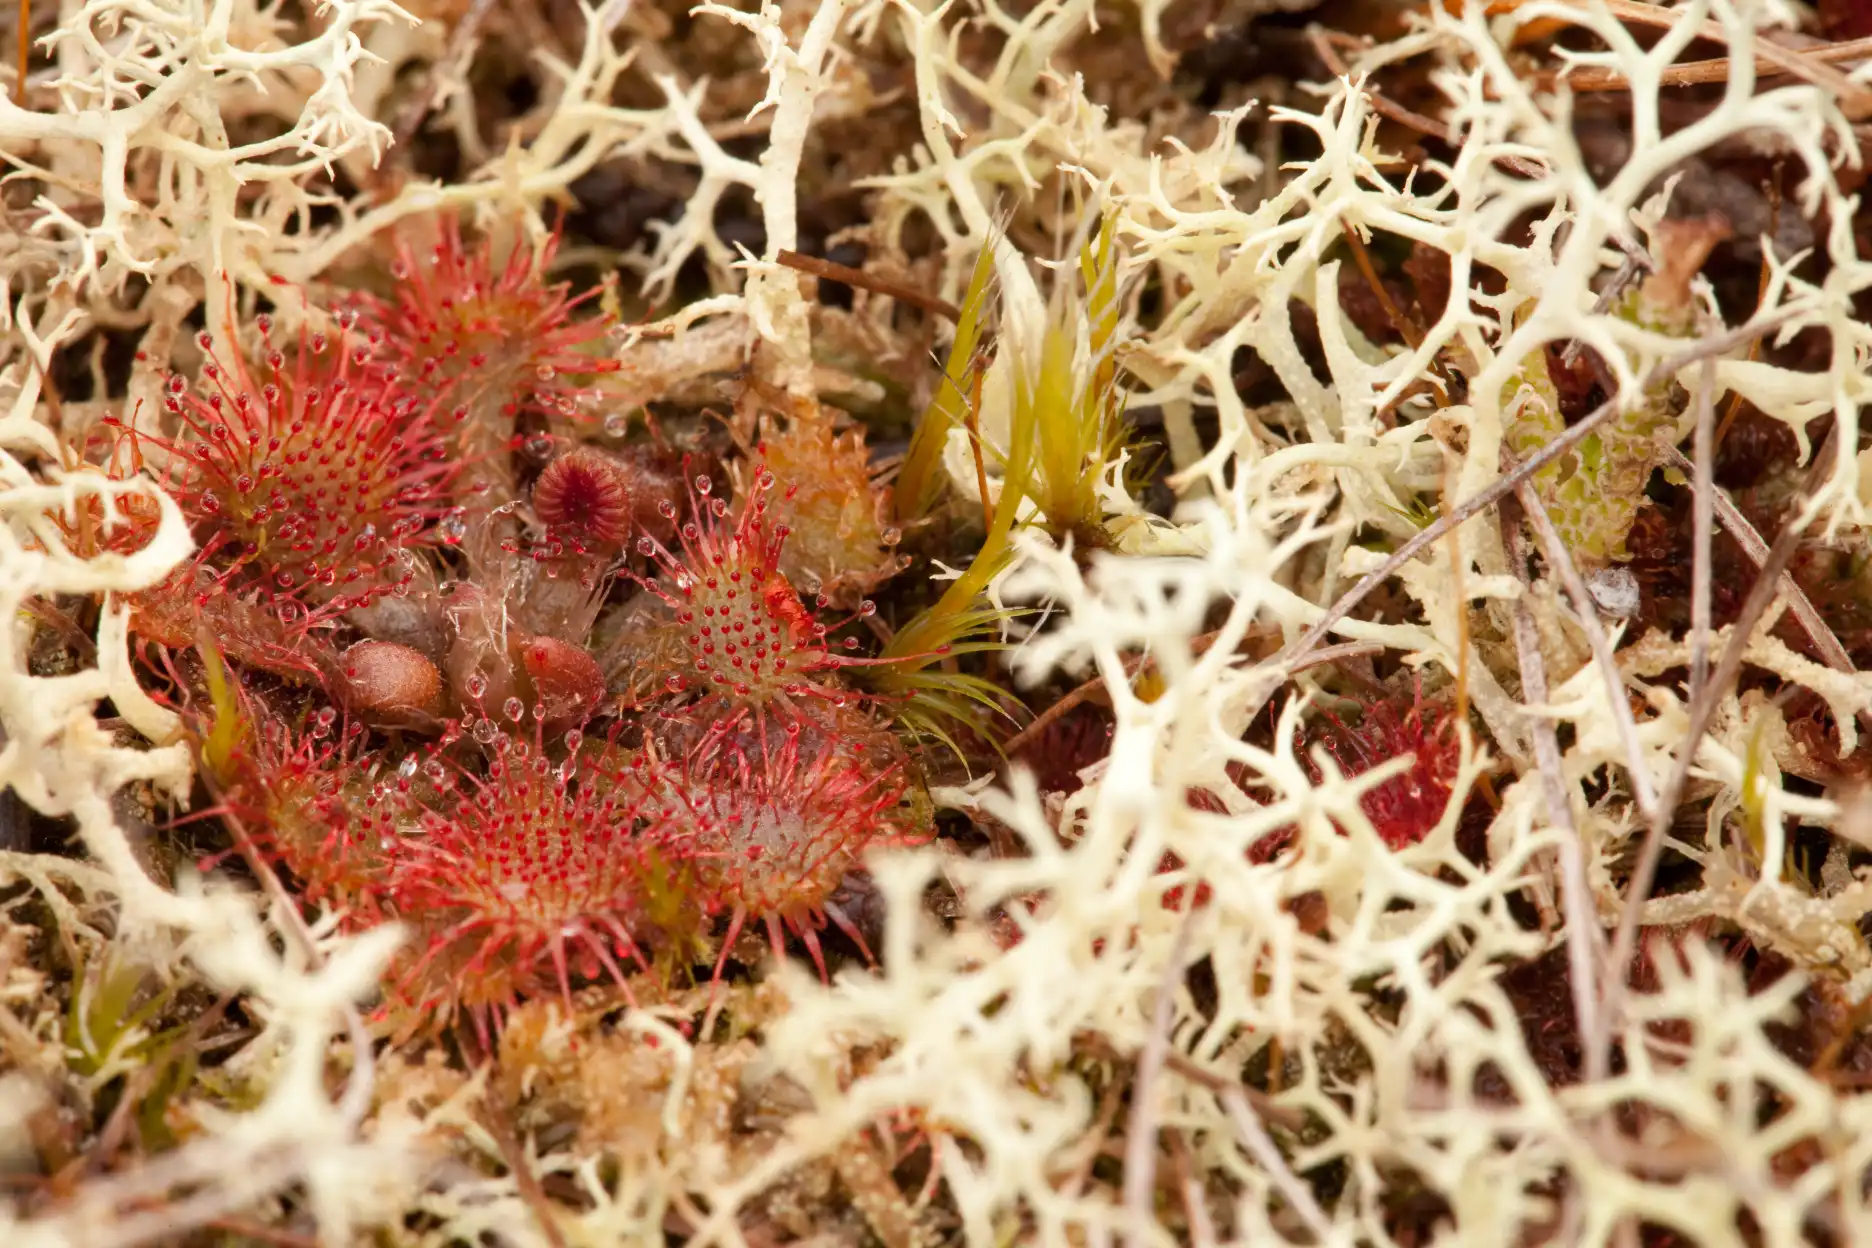 Lichens surround a Drosera spatulata plant